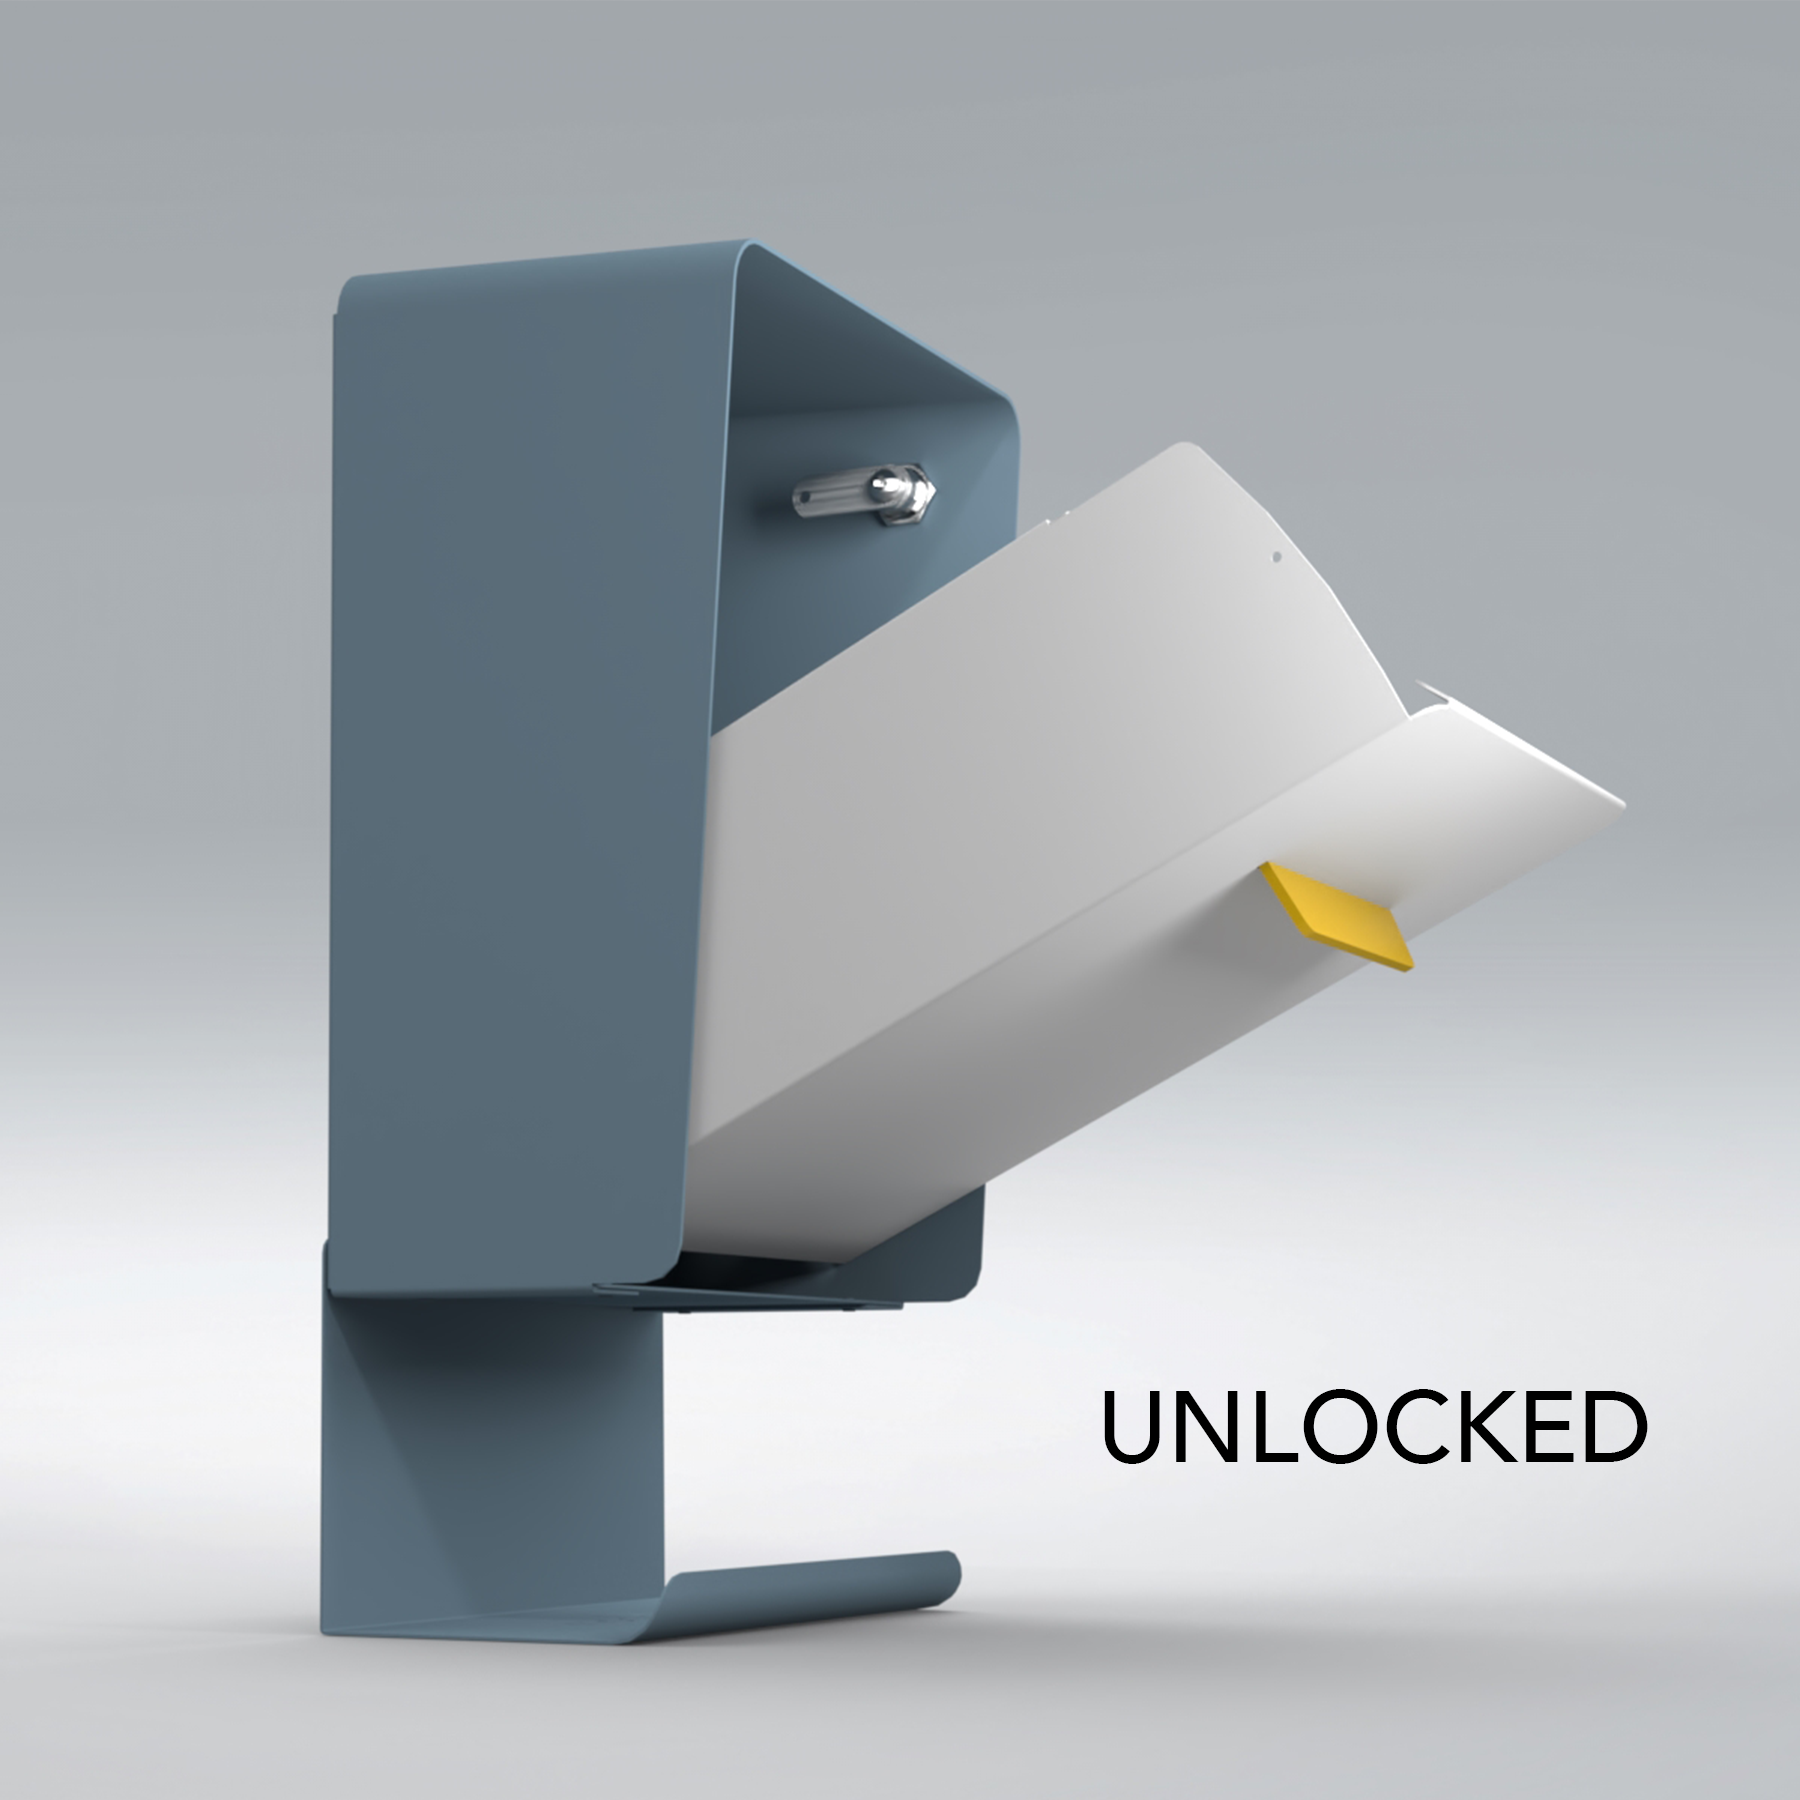 4_Unlocked modbox wall mounted locking mailbox